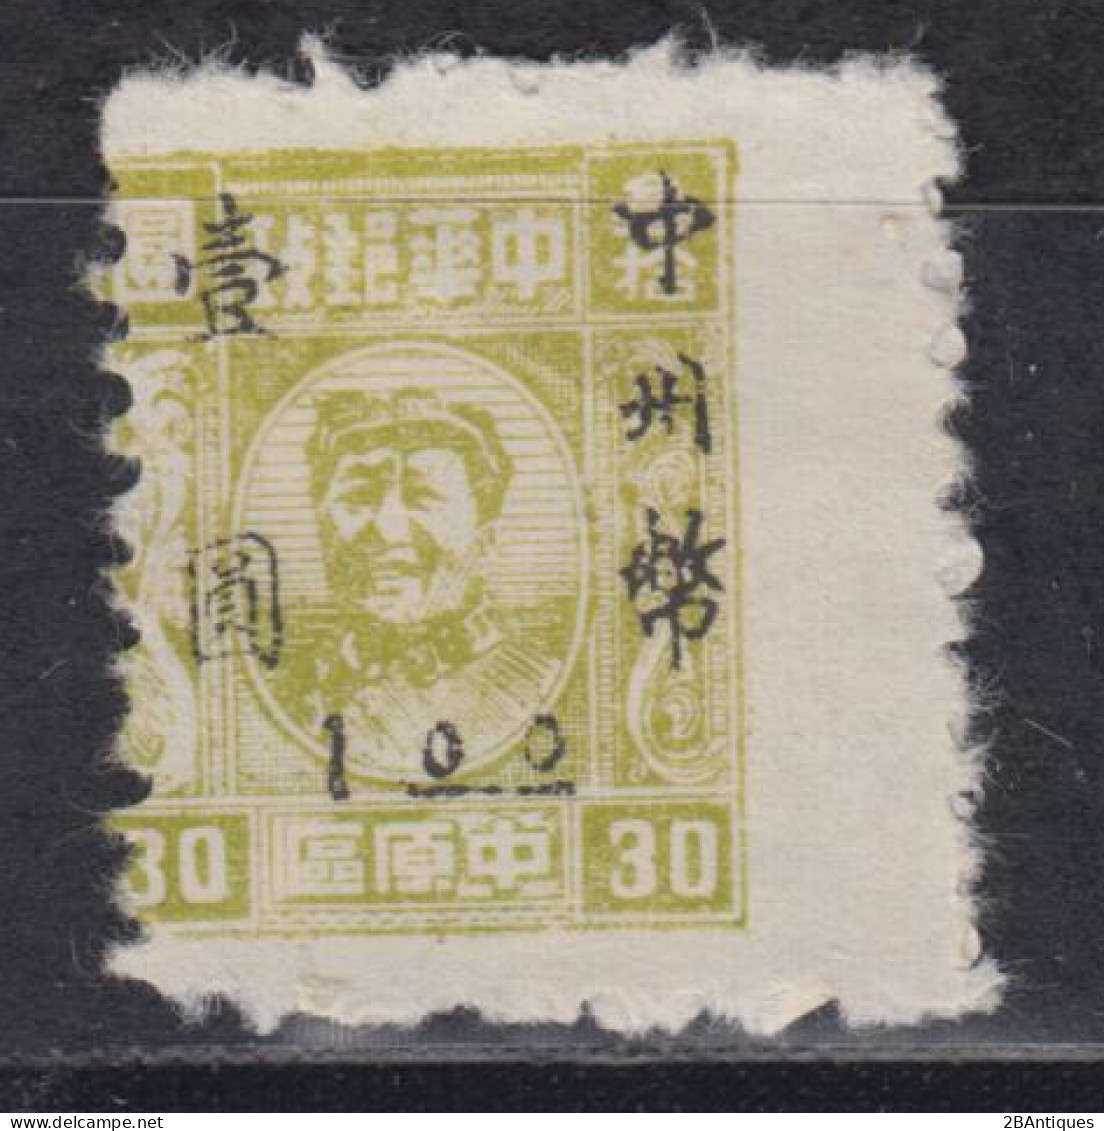 CENTRAL CHINA 1949 - Mao - China Central 1948-49